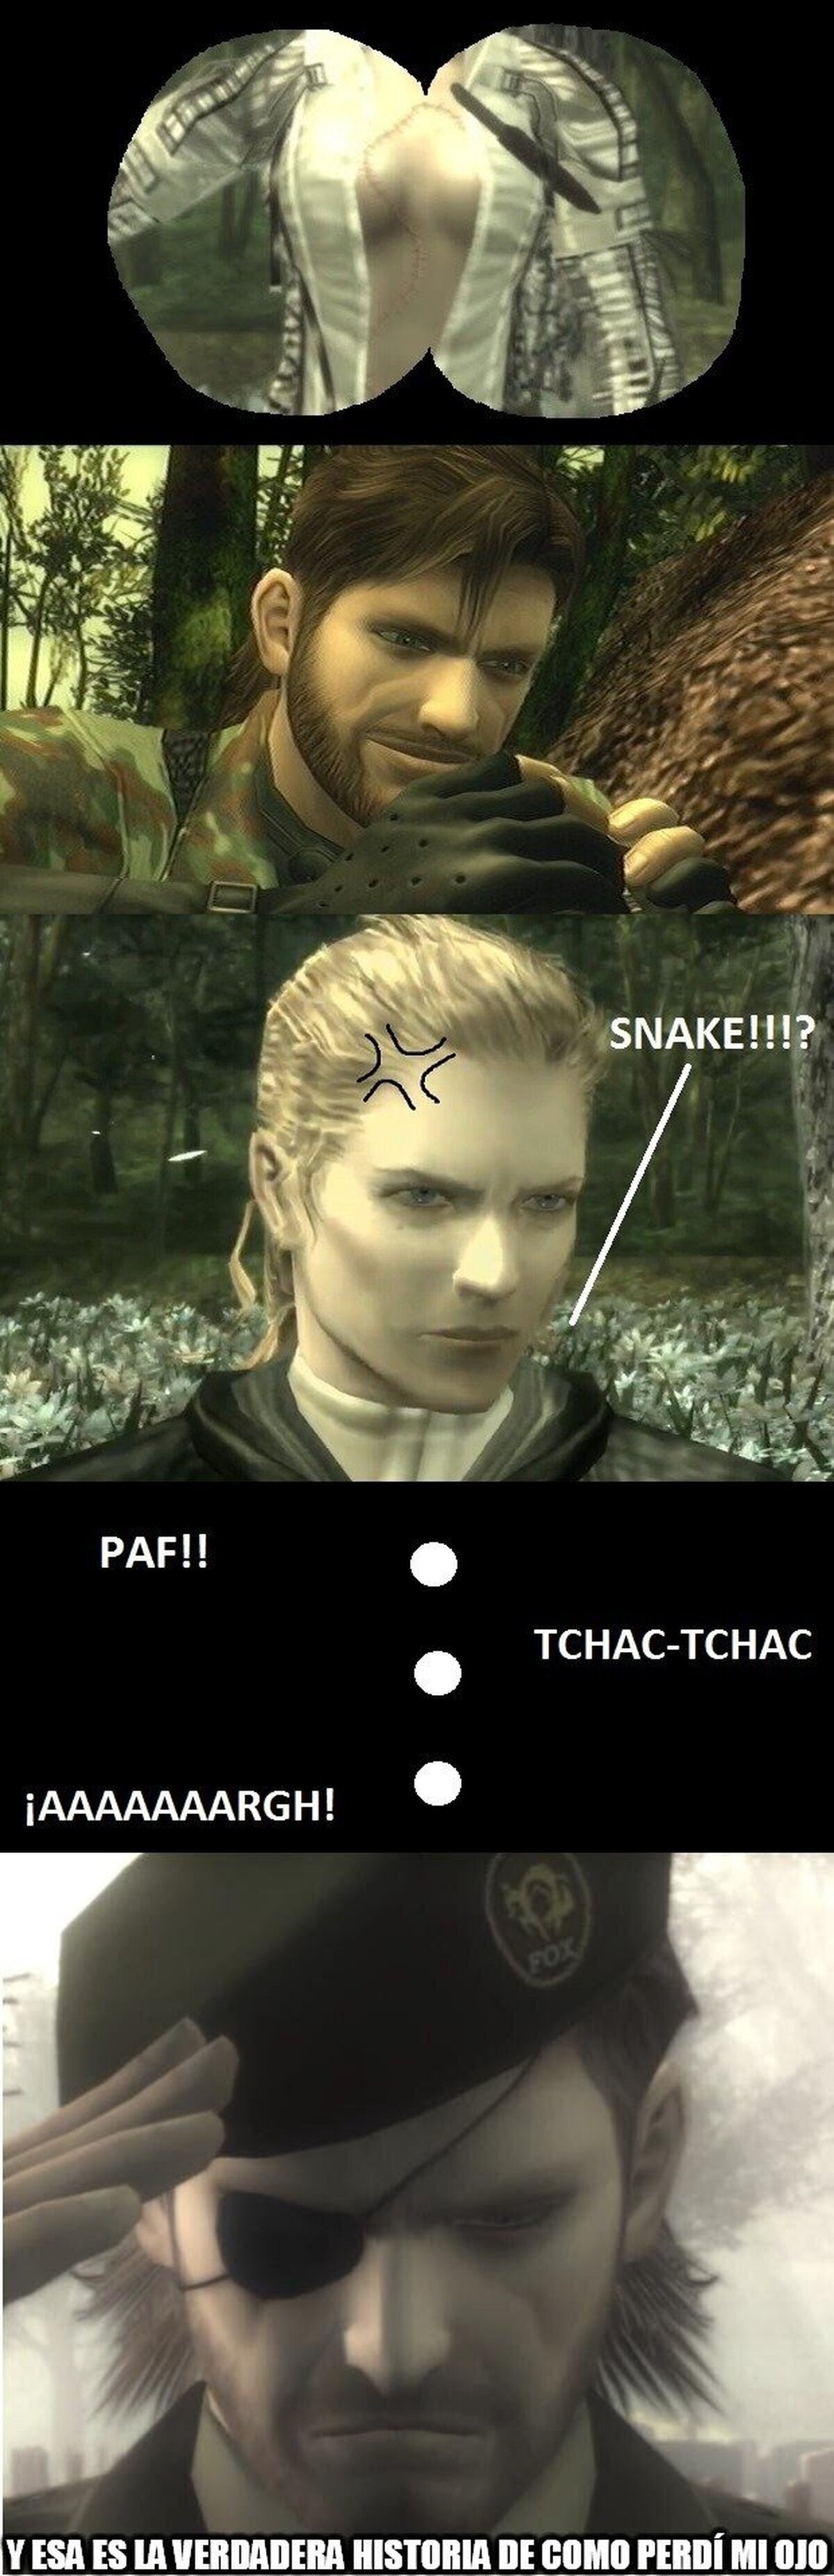 Snake, si es que eres más picarón...